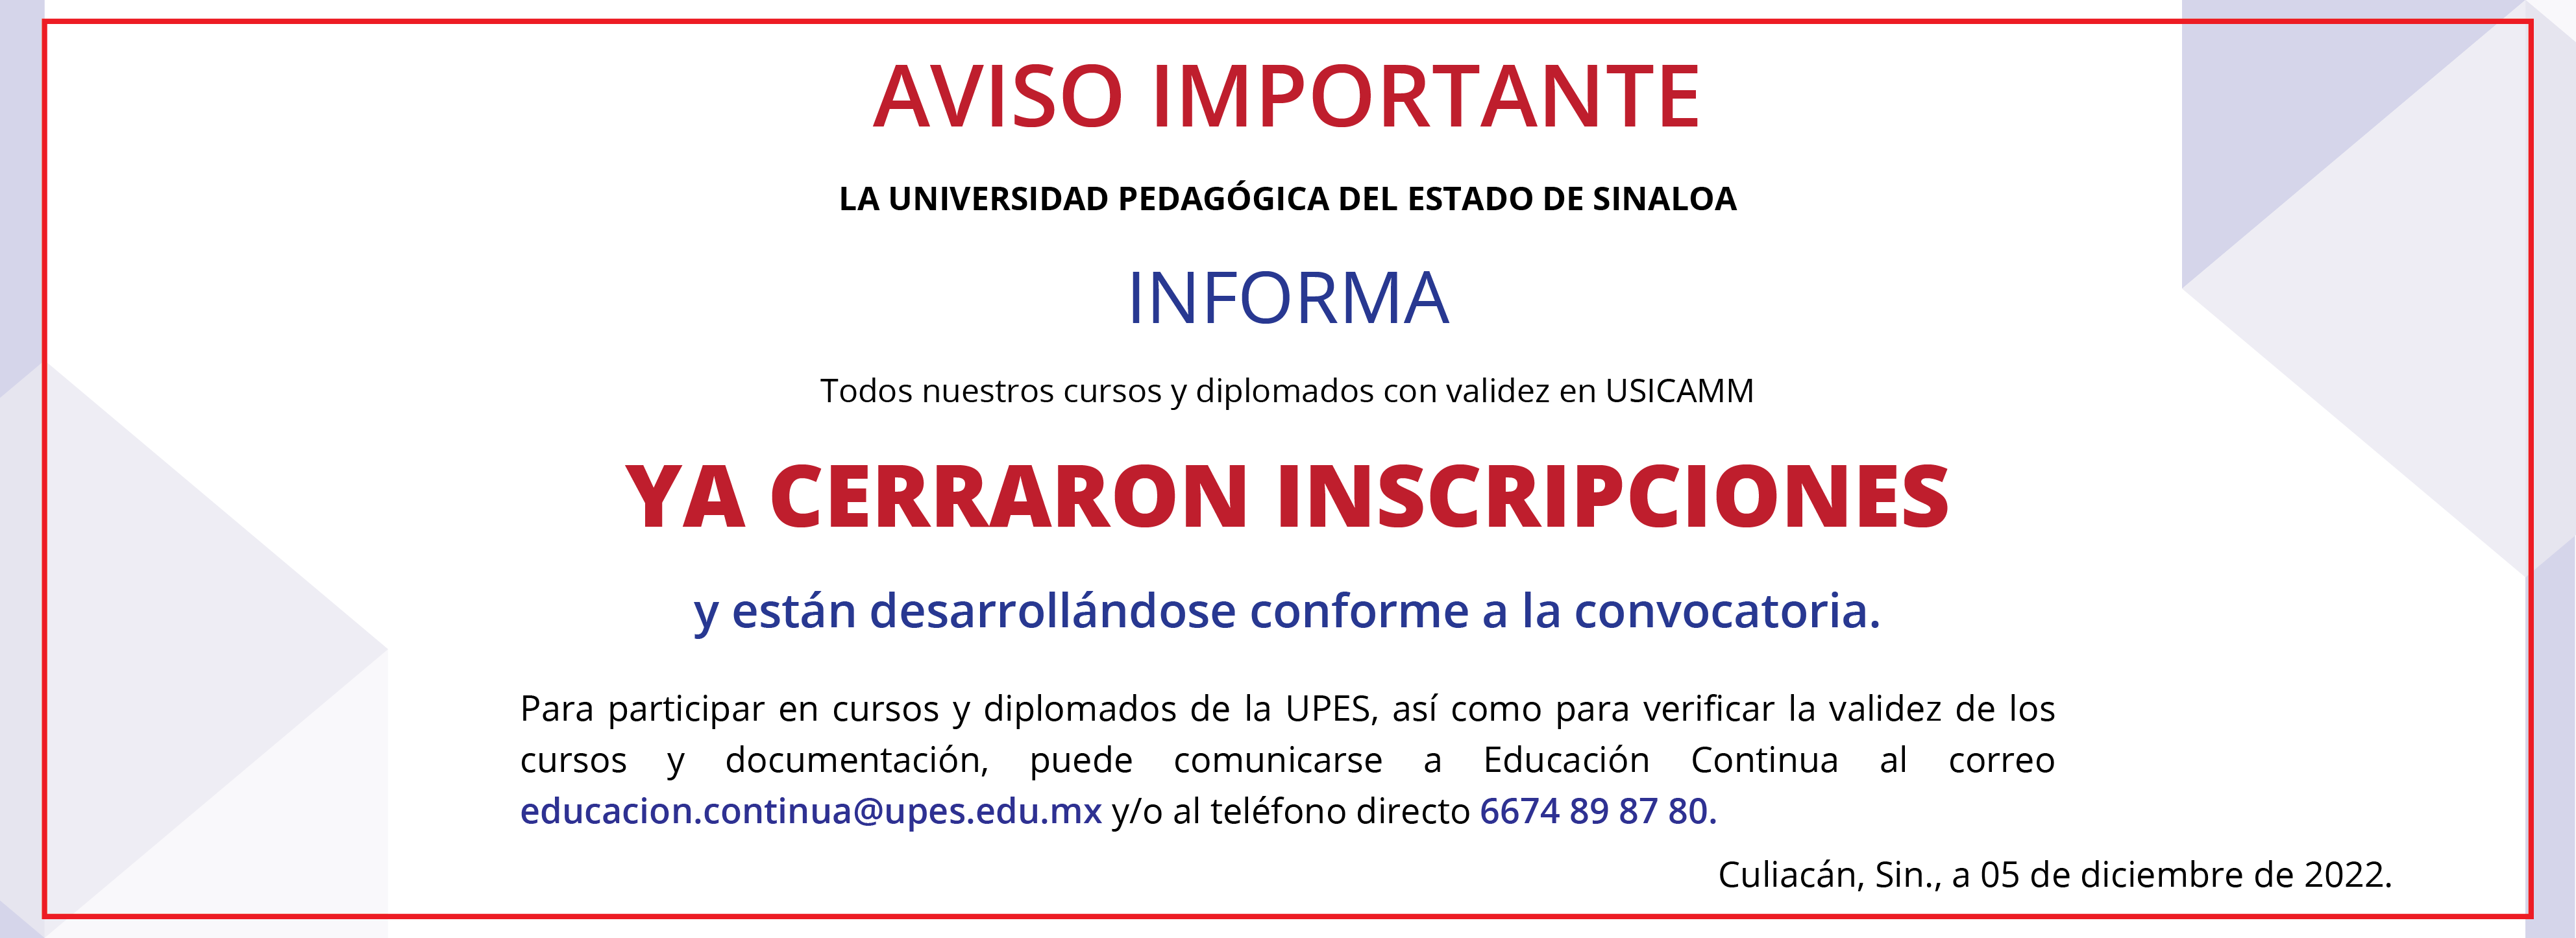 Convocatoria_Cursos_y_Diplomados_Educacion_Continua_Aviso_cierre_banner_web_2